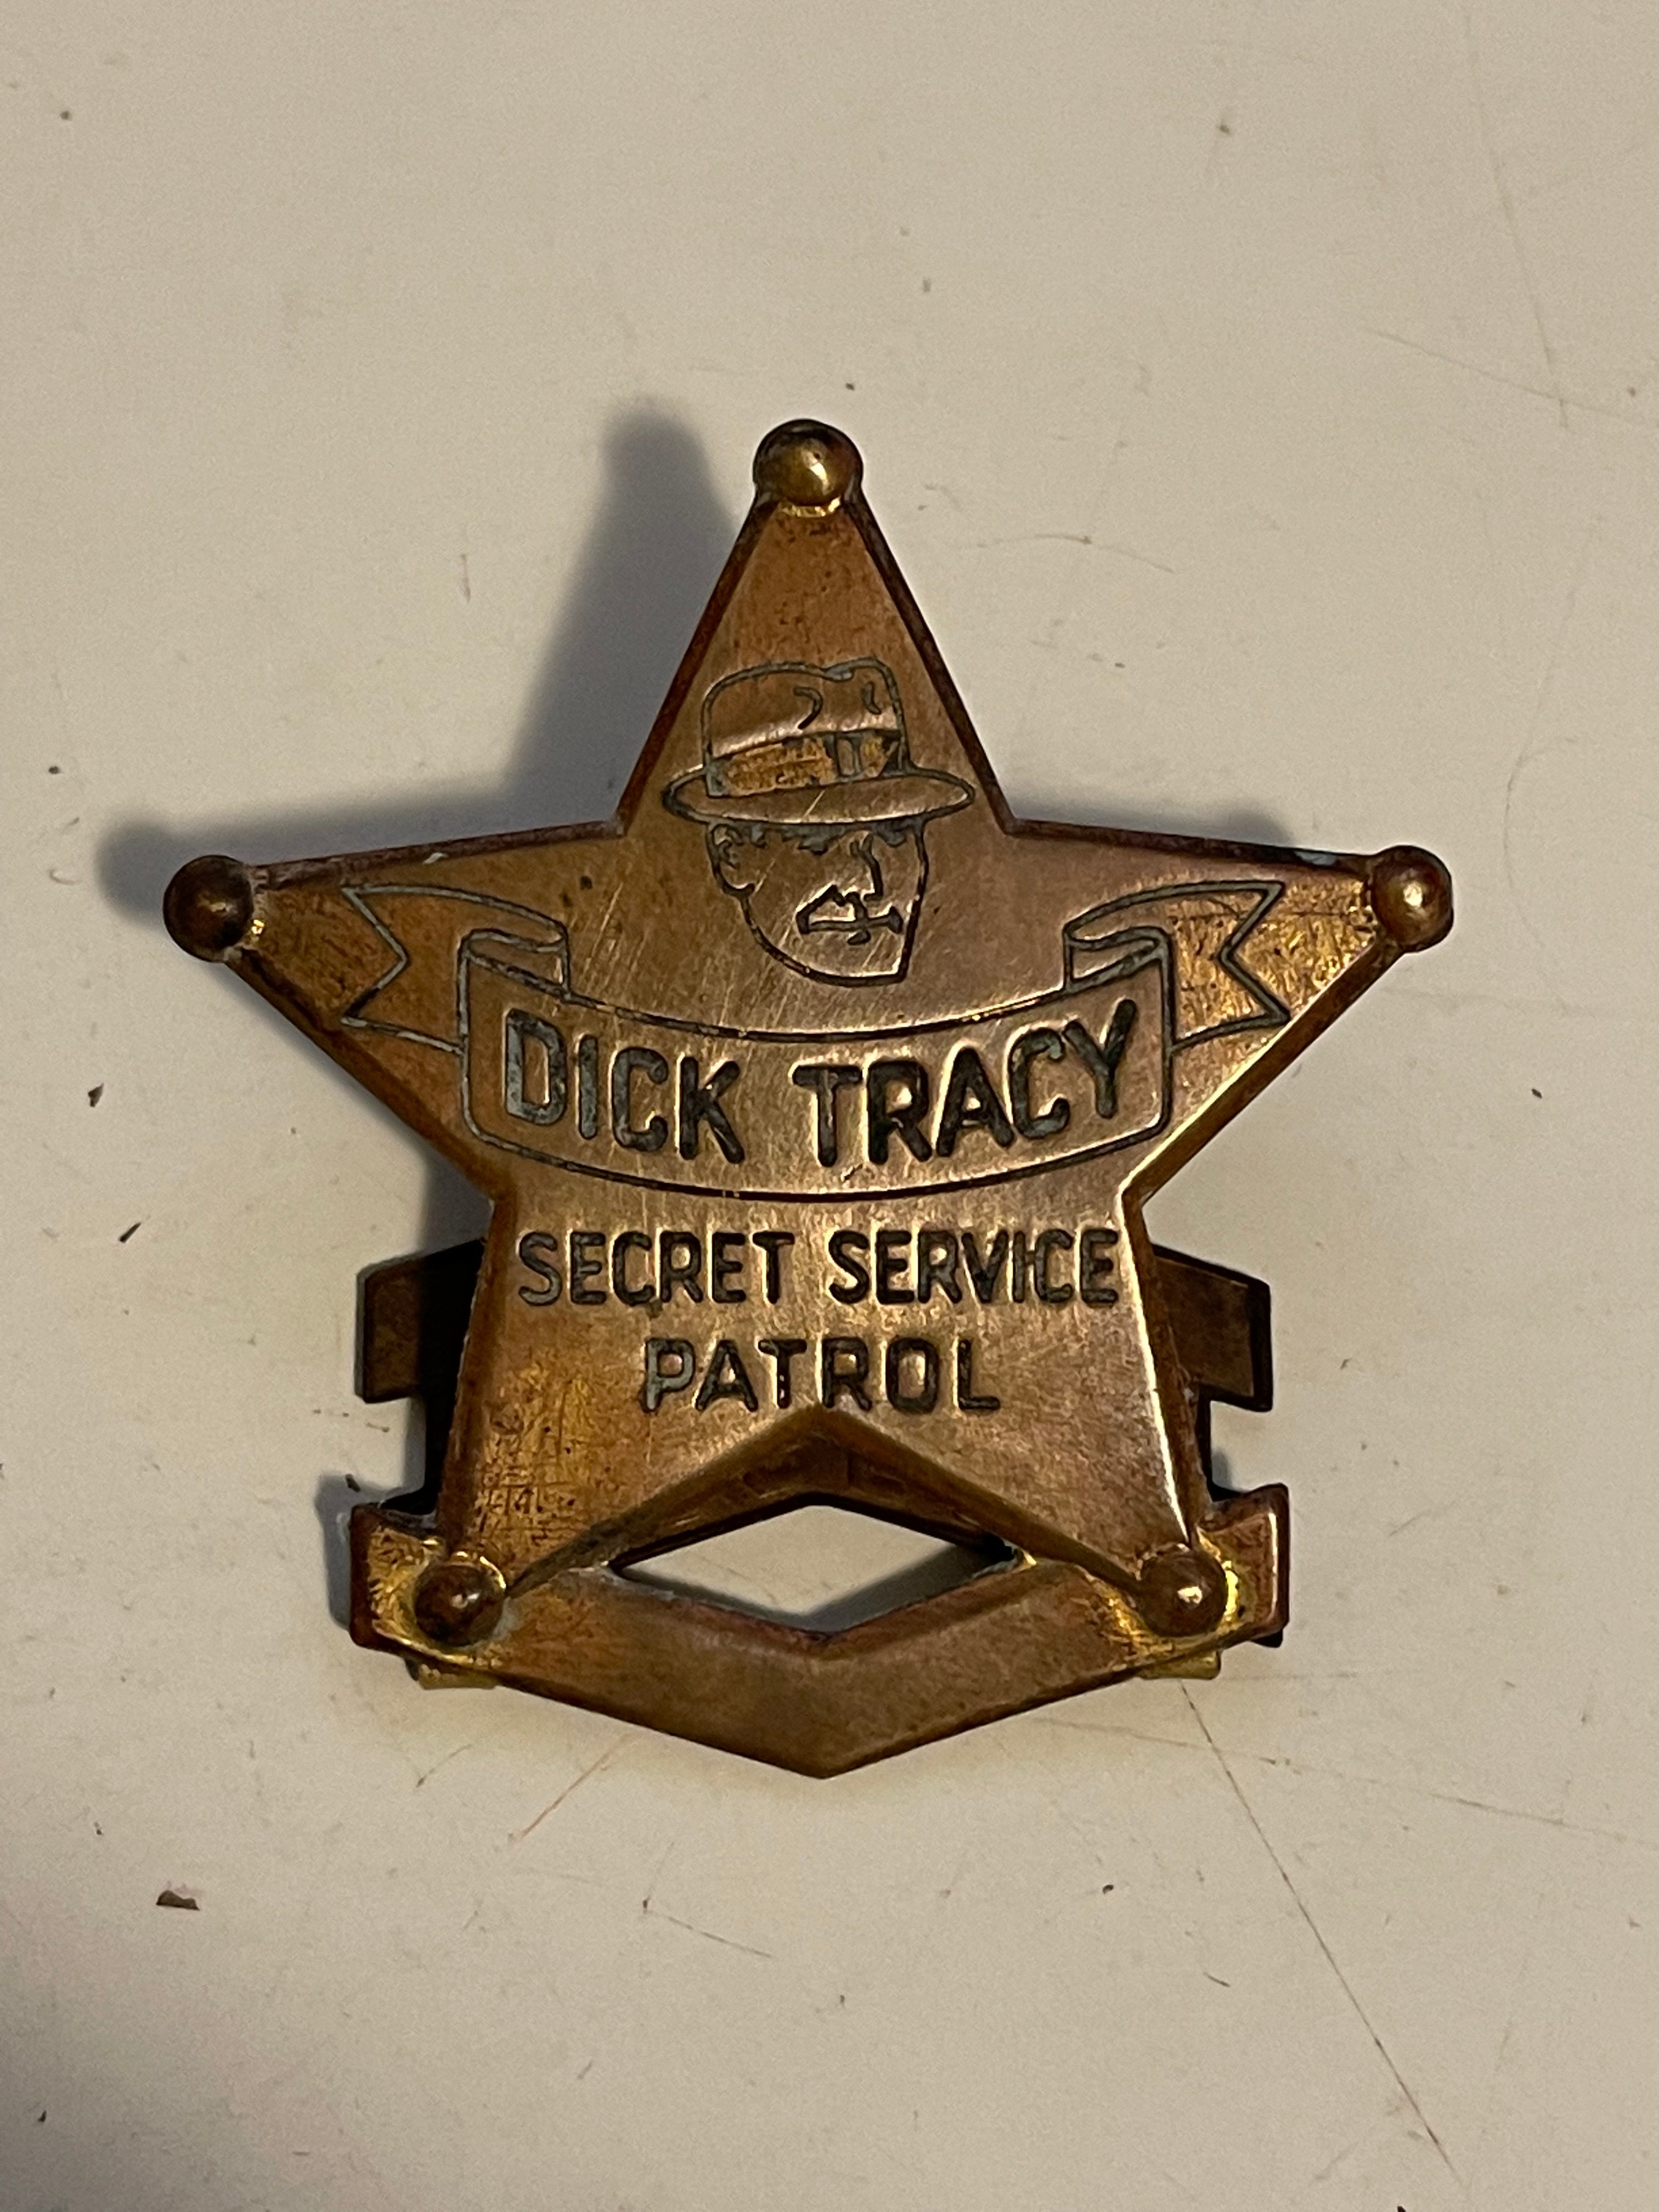 Dick Tracy secret service patrol rare Quaker Oats metal badge 1938